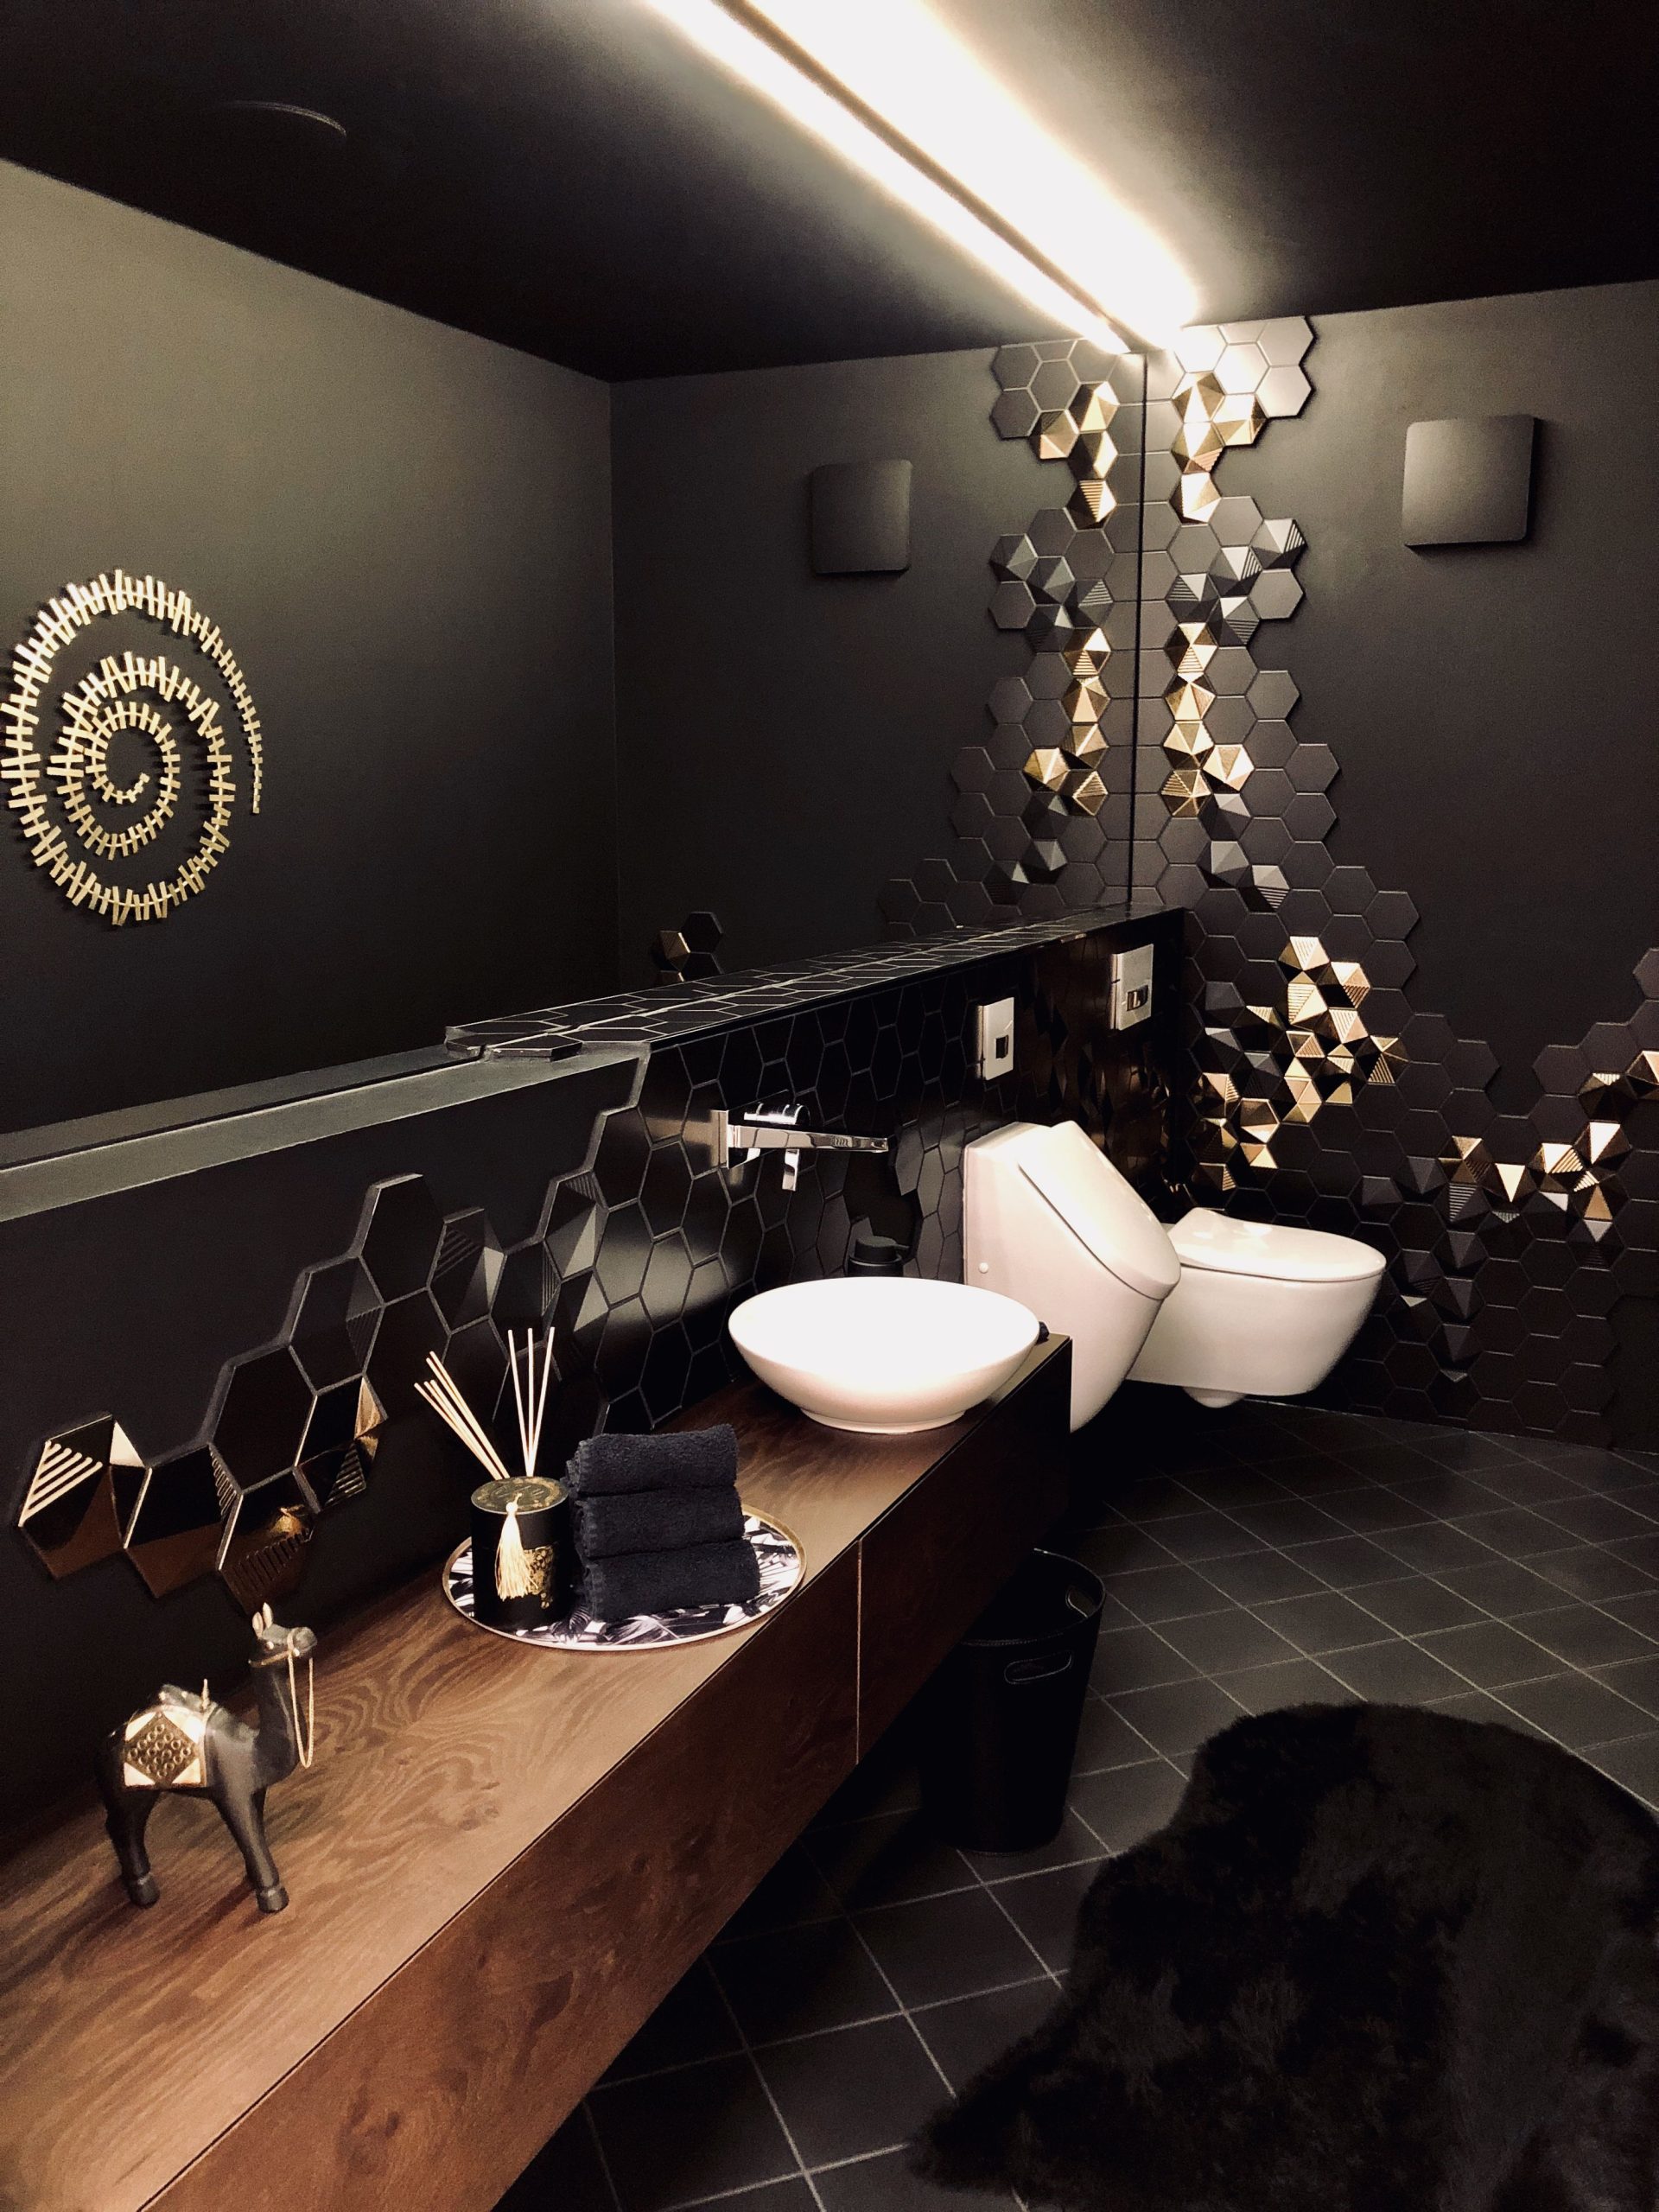 Black & Gold bathroom | Black and gold bathroom, Gold bathroom, Gold tile